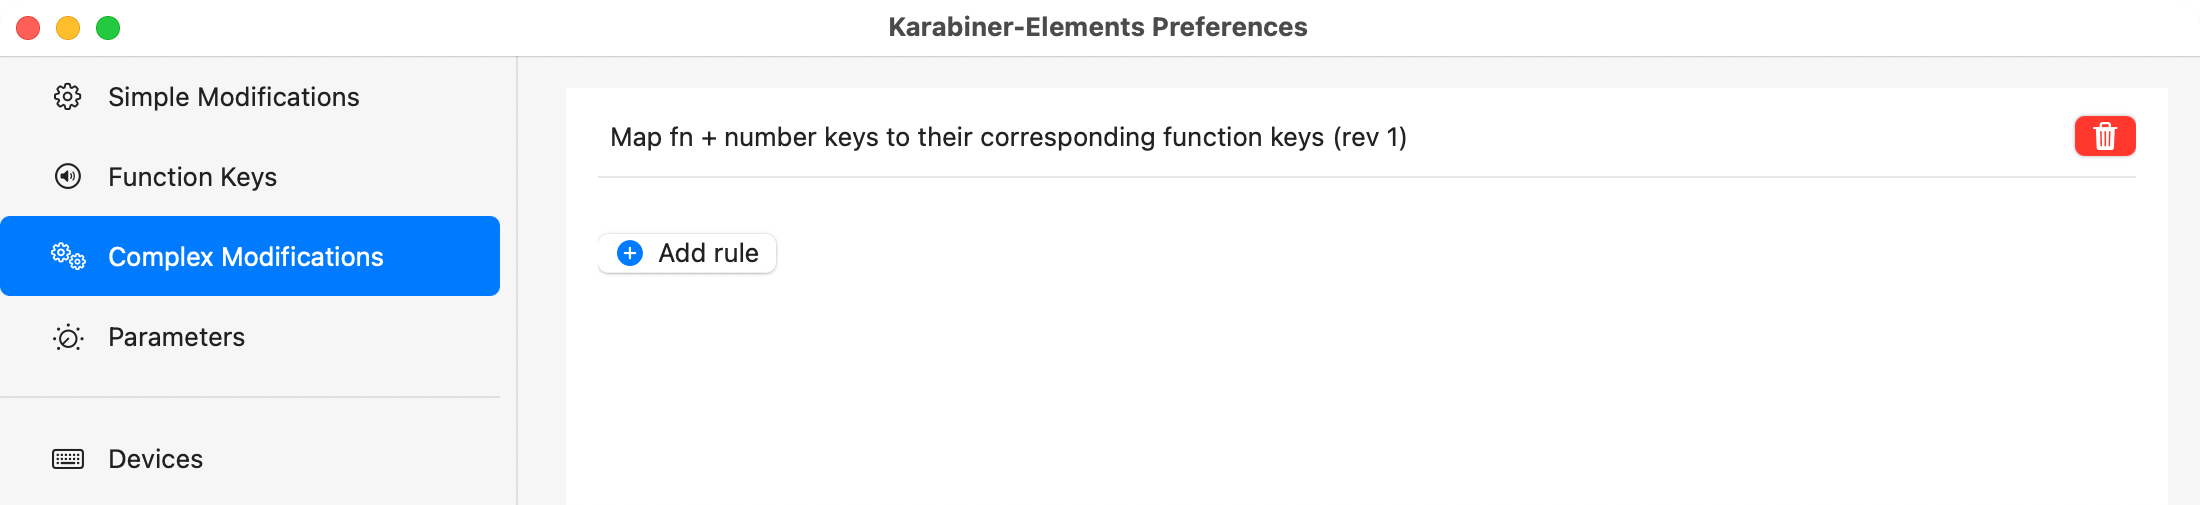 karabiner-elements-fn_plus_numbers_to_function_keys@2x.png